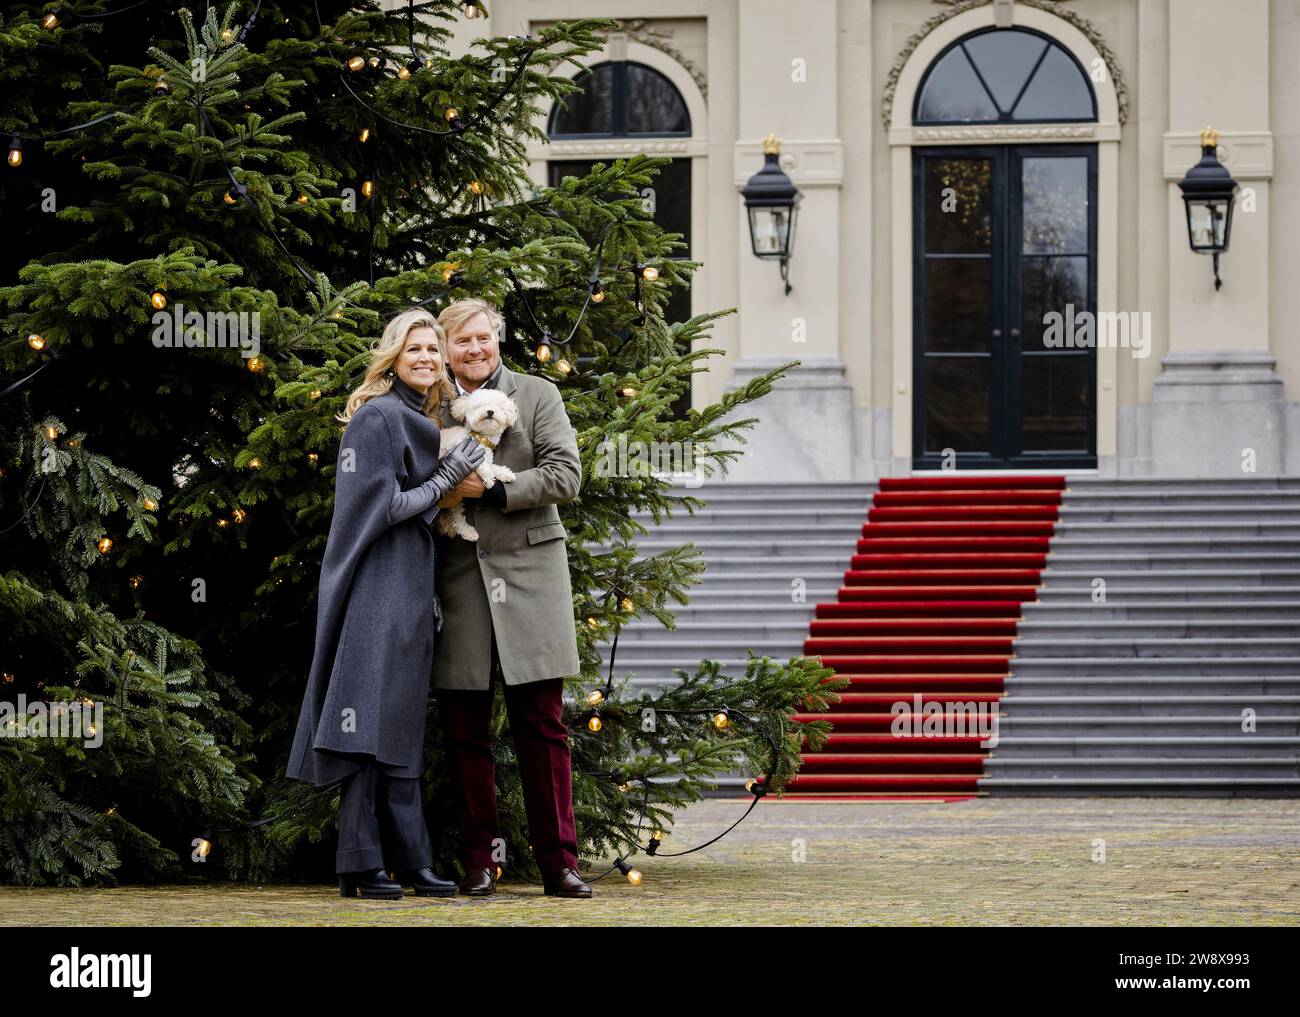 DEN HAAG - König Willem-Alexander und Königin Maxima während der traditionellen Fotosession der königlichen Familie im Huis Ten Bosch Palast. ANP SEM VAN DER WAL niederlande aus - belgien aus Stockfoto